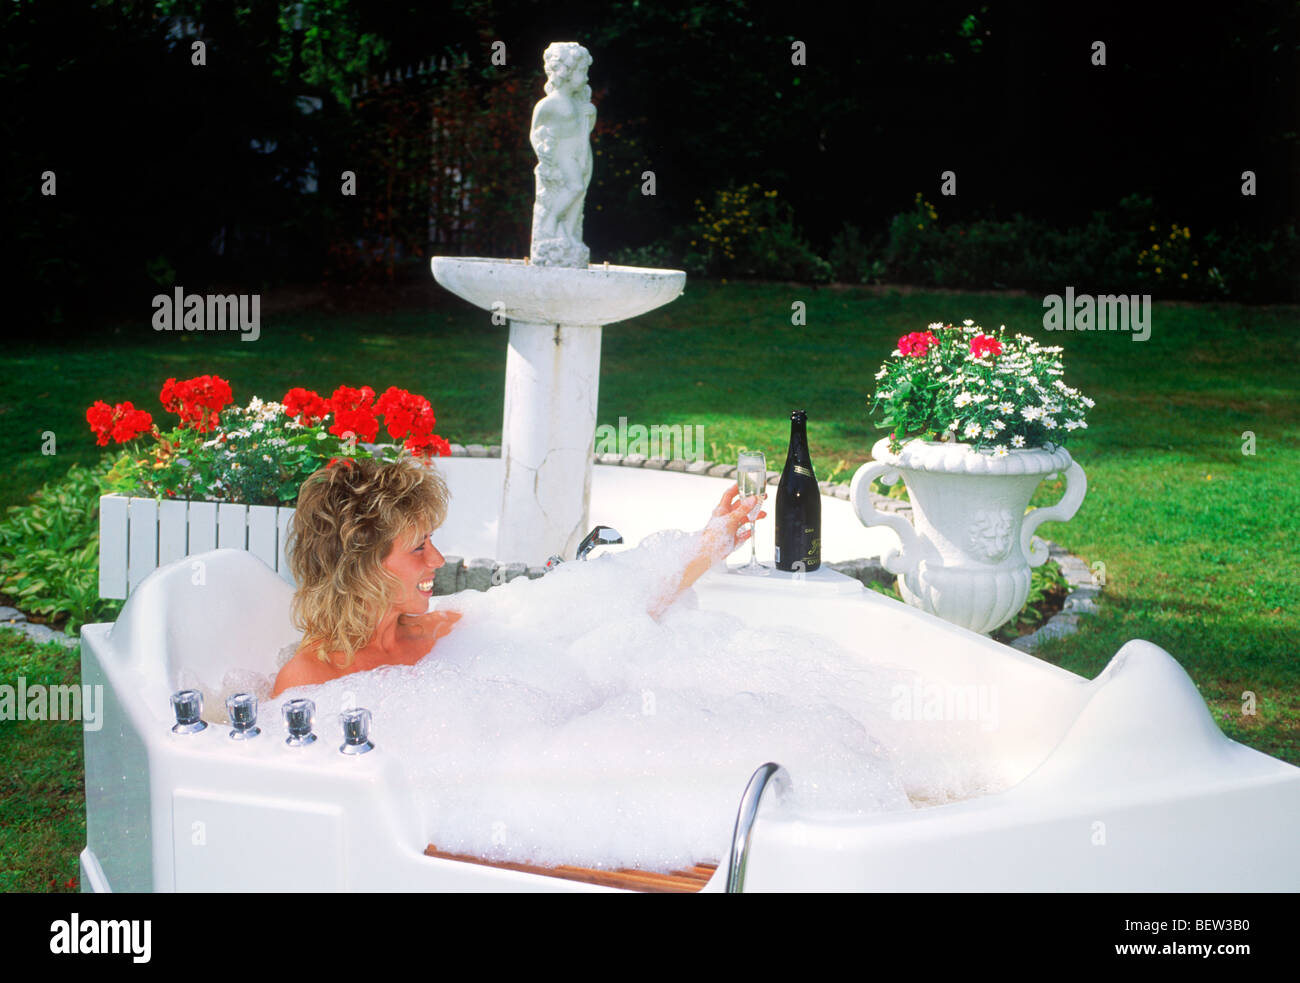 Les femmes le trempage dans une baignoire avec des bulles et verre de champagne Banque D'Images